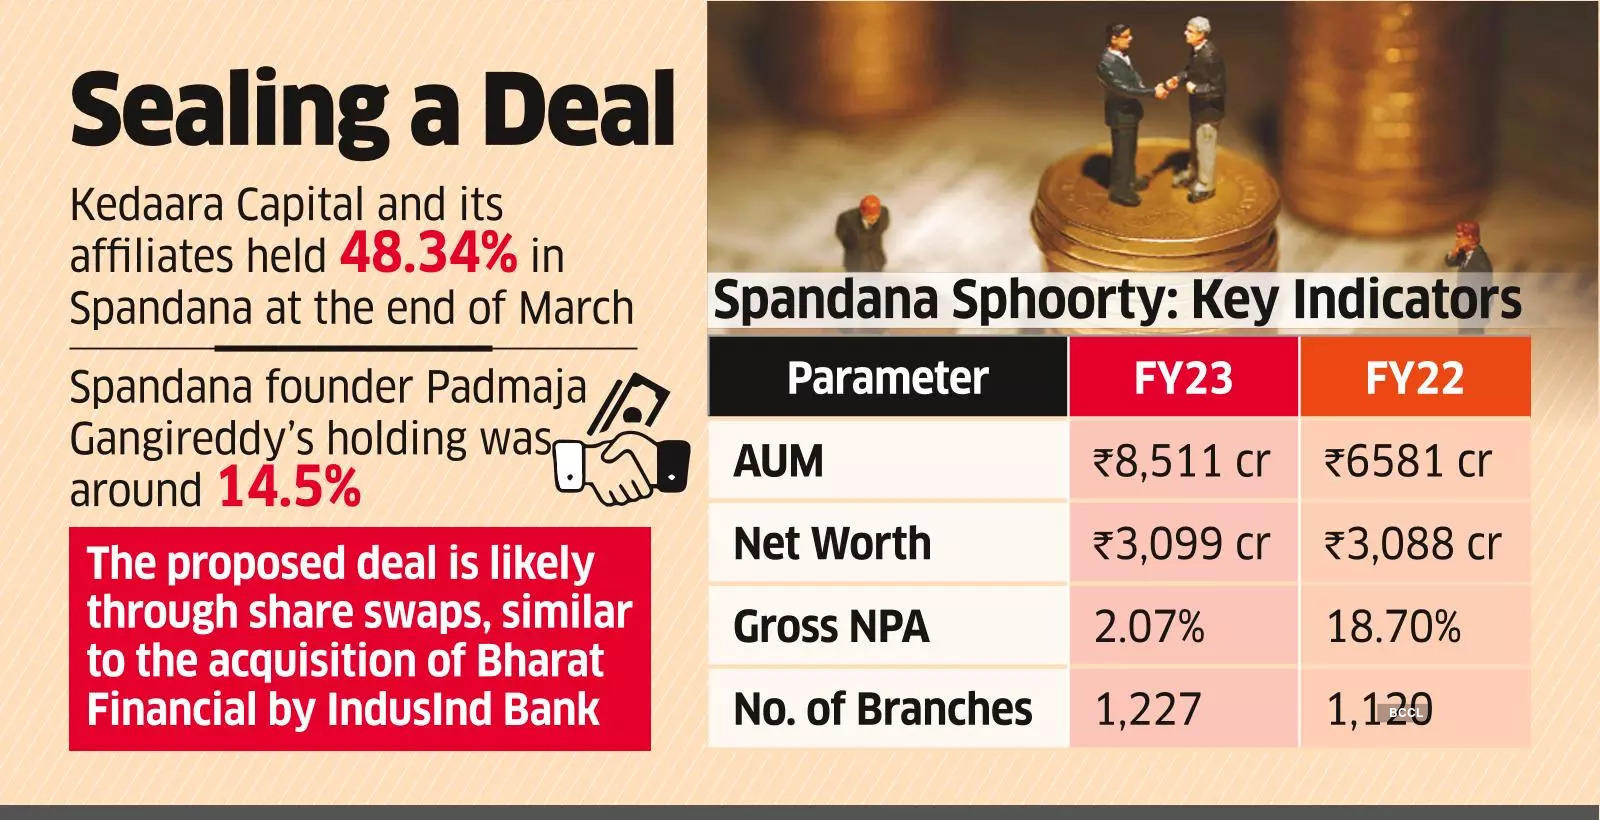 Kedaara in Talks with Yes Bank for Sale of Spandana Sphoorty